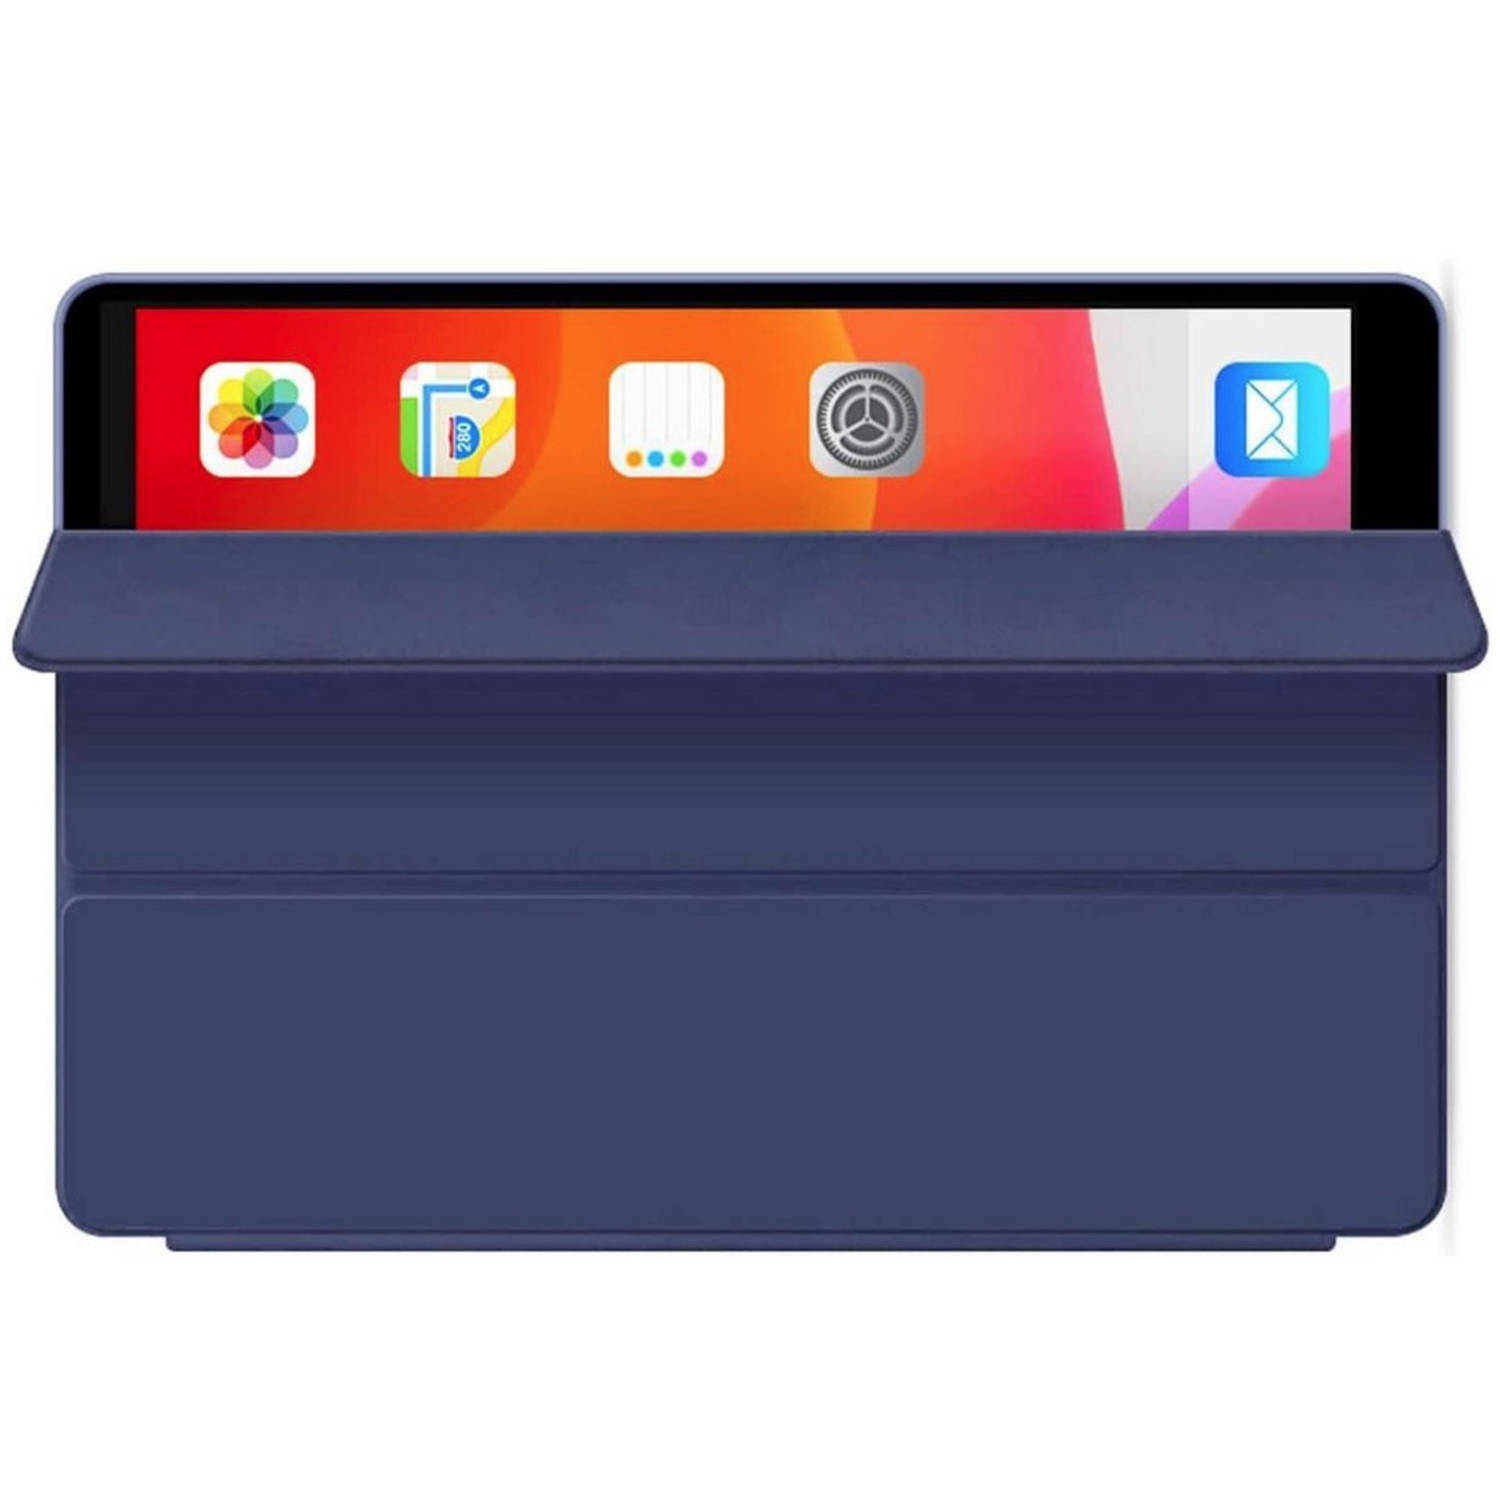 HEM Siliconen iPad Hoes geschikt voor iPad 10.2 (2019 / 2020 / 2021) - Donkerblauw - 10,2 inch - Autowake Cover - iPad